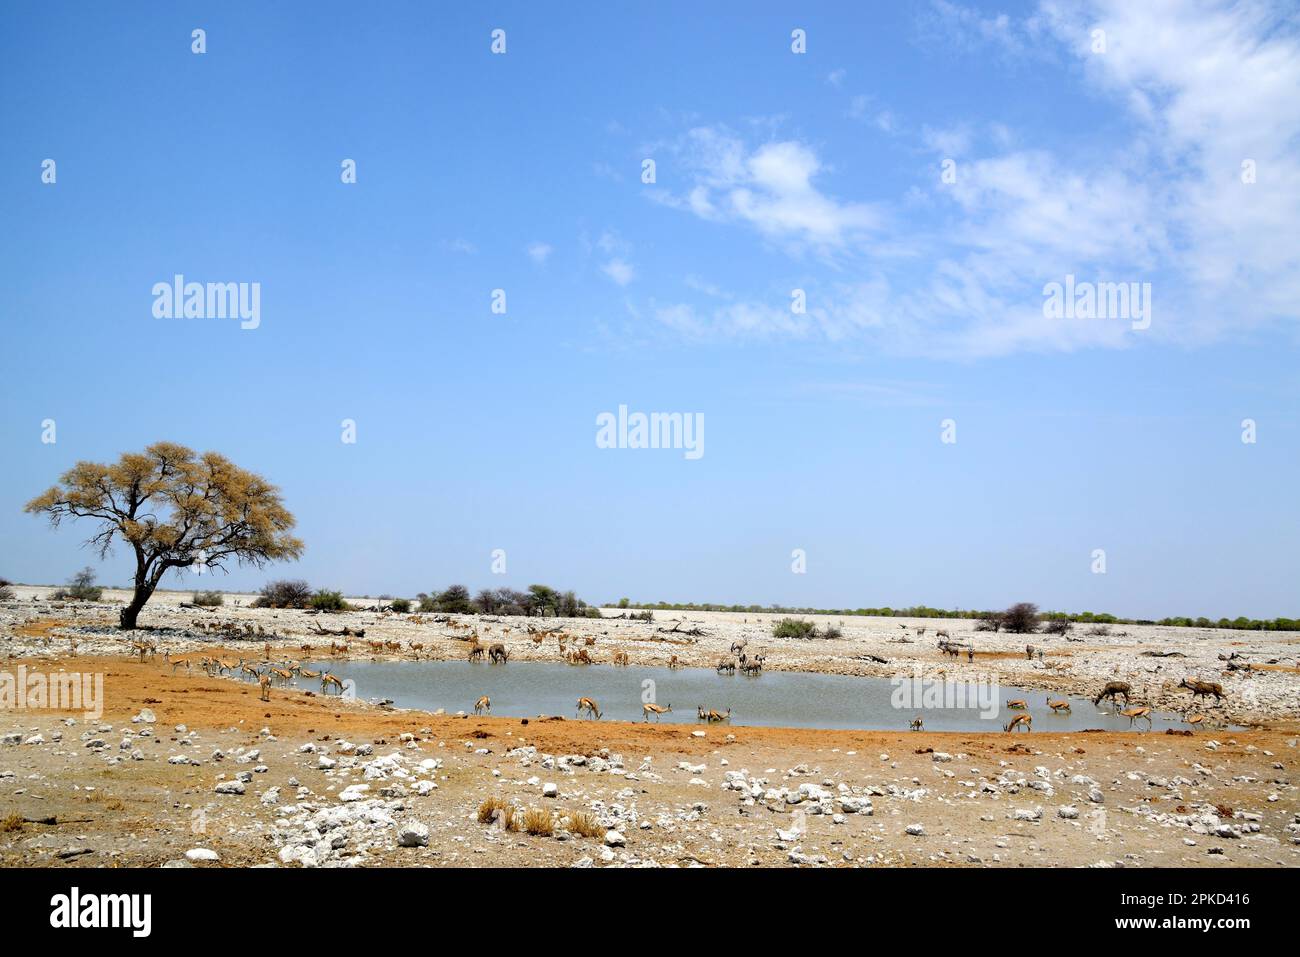 Trou d'eau d'Okaukuejo en saison sèche avec différentes cartes à boire, Parc national d'Etosha, Namibie Banque D'Images